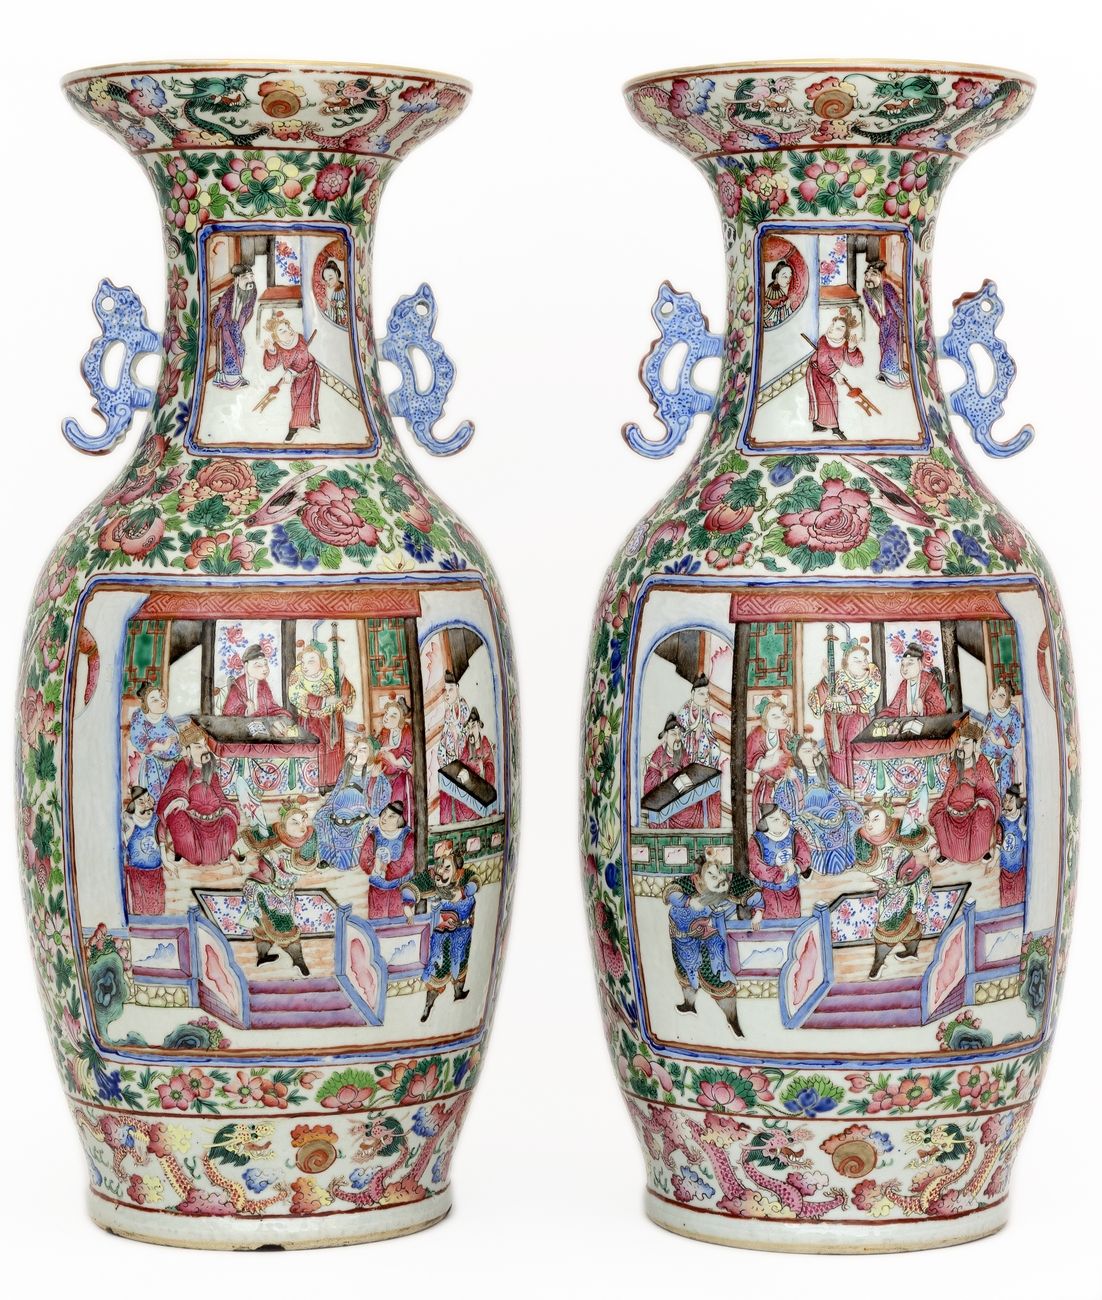 Null 中国，19世纪
一对广东瓷器花瓶，用法米勒珐琅彩装饰，有宫廷场景的刻痕，颈部和底部有龙猎取圣珠的楣饰。
高度 : 61 cm
(一个带星星的底座)